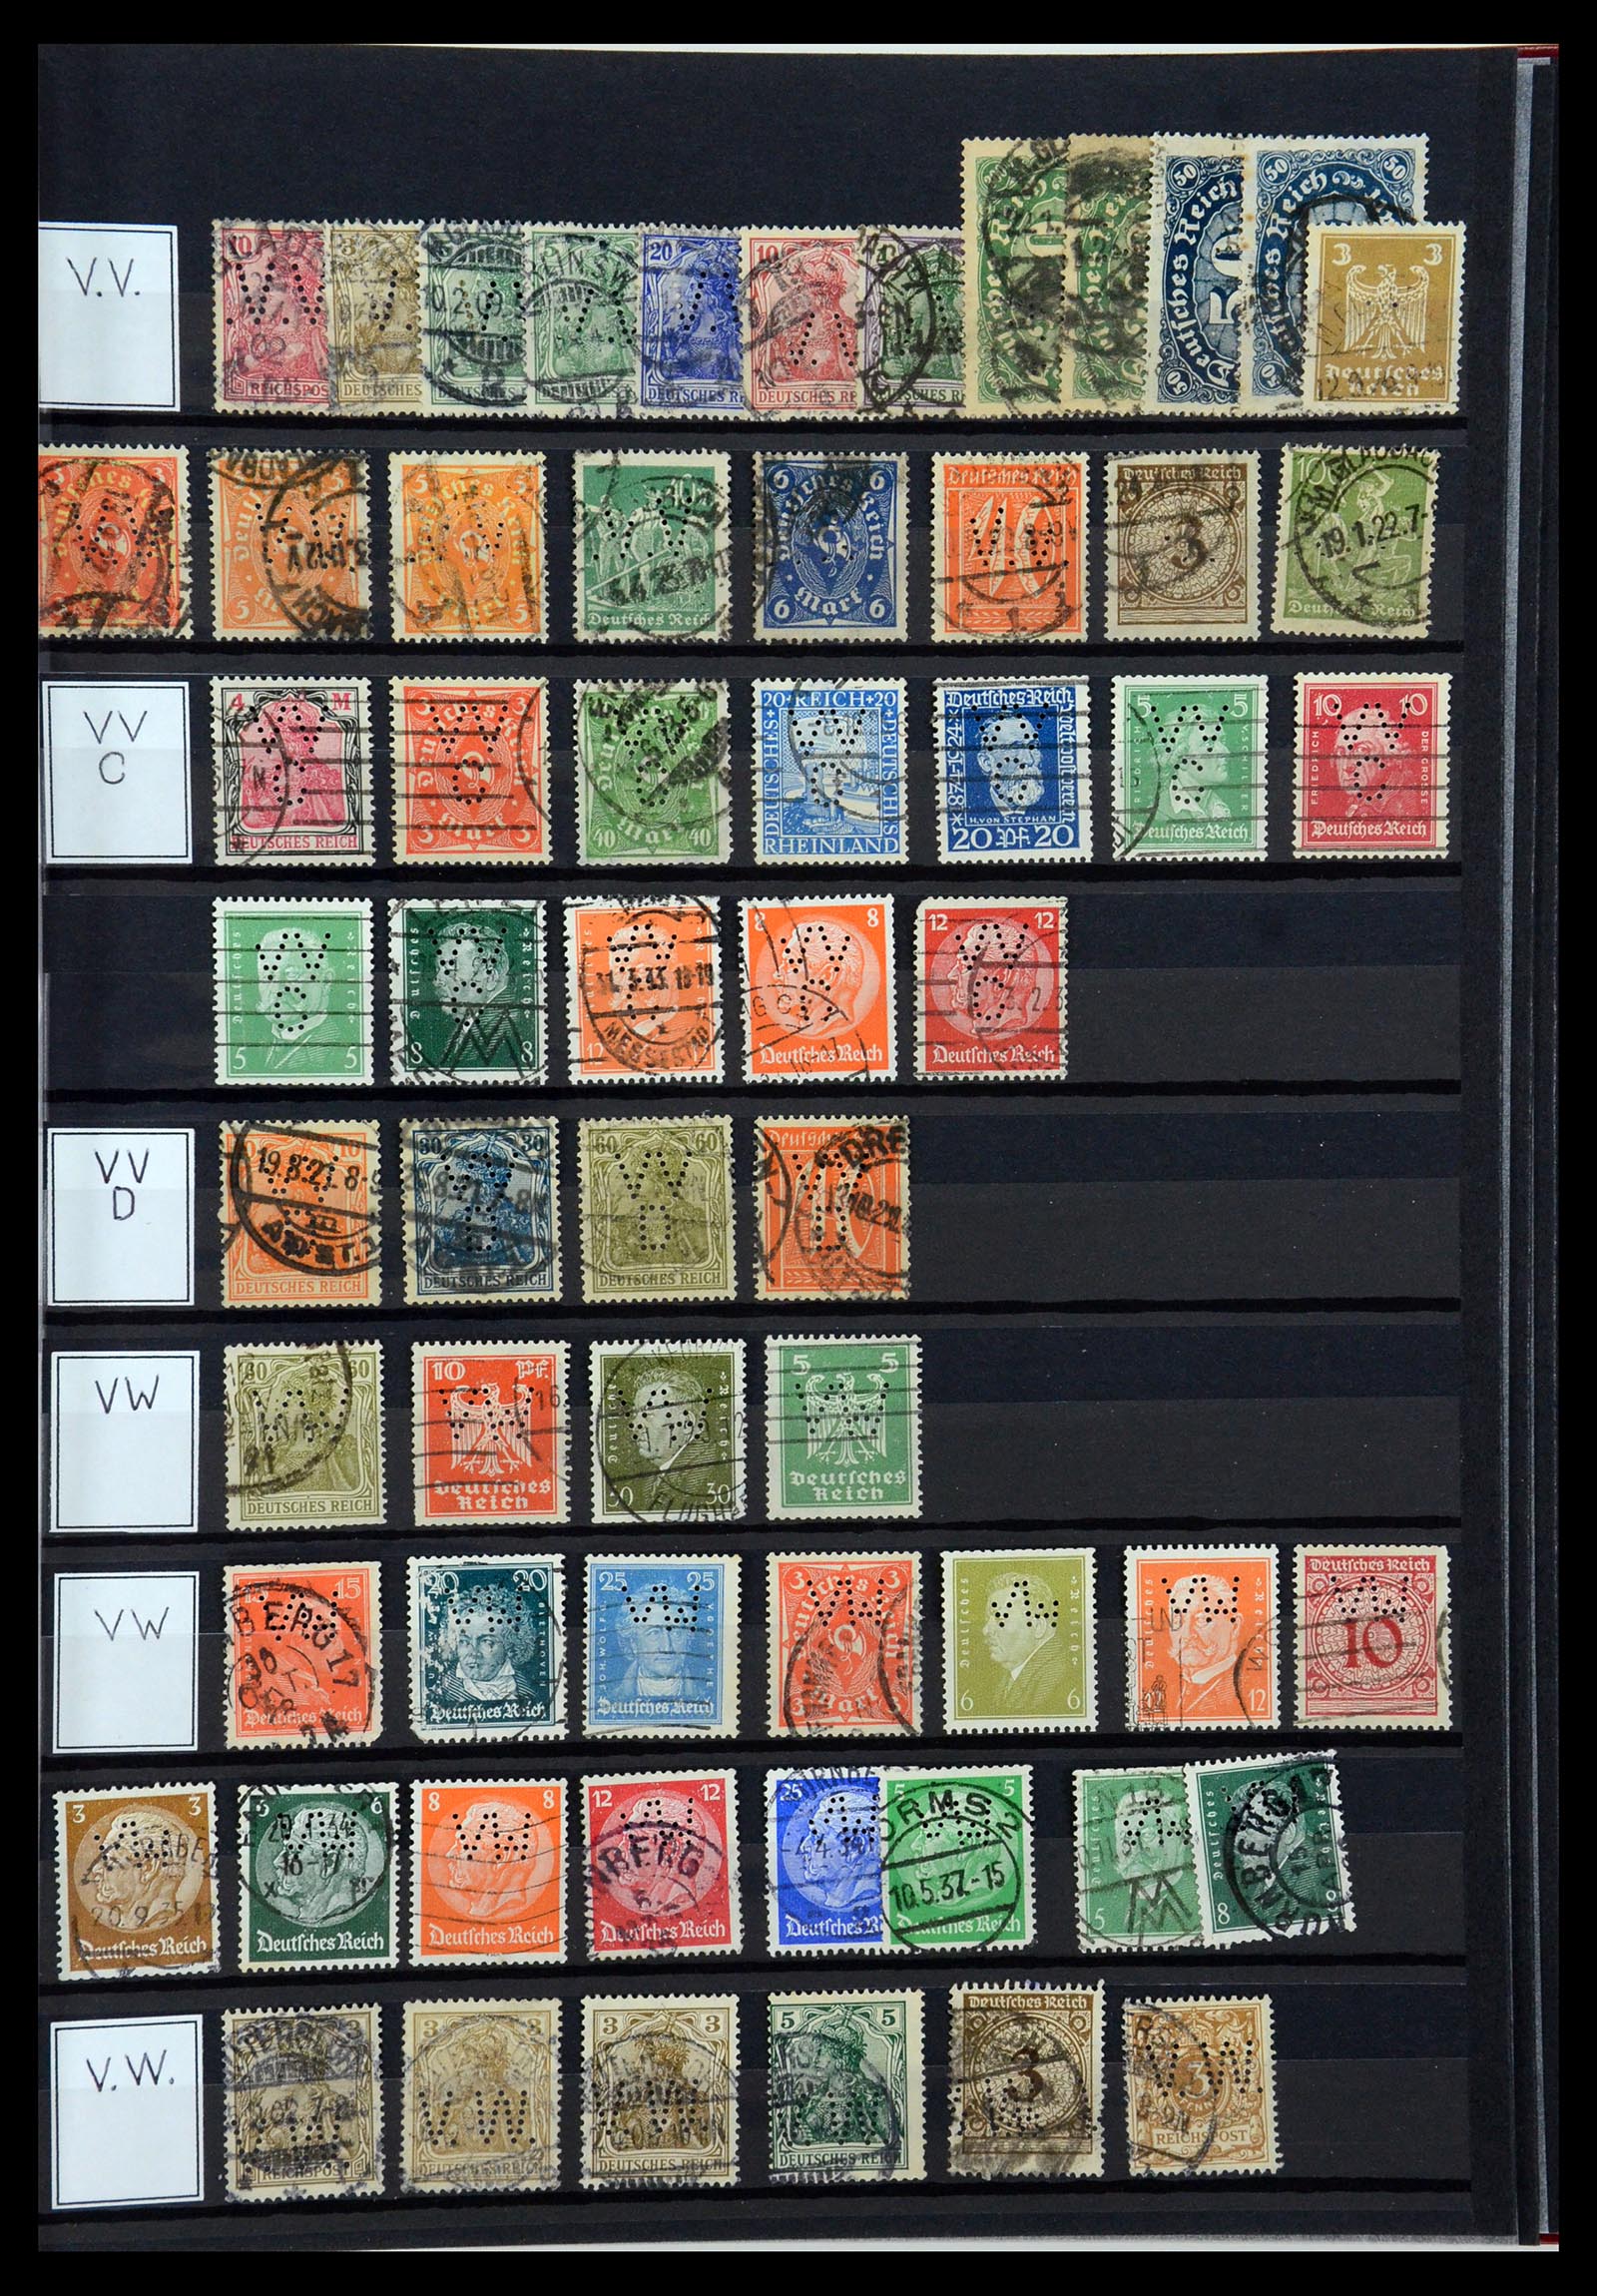 36405 332 - Stamp collection 36405 German Reich perfins 1880-1945.